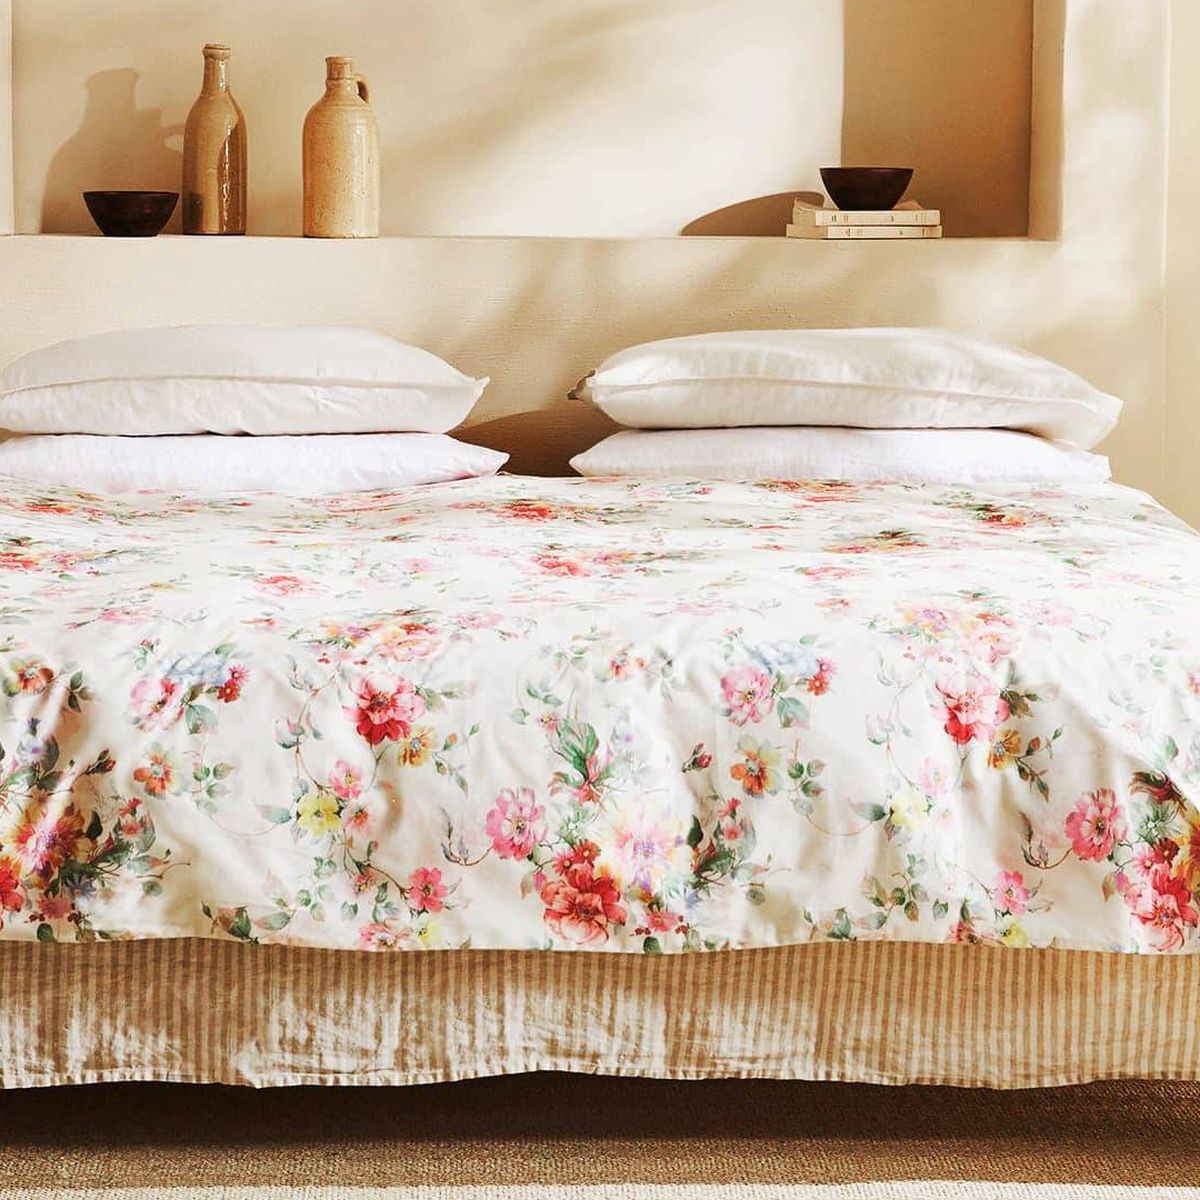 Los special price de Zara Home invitan a renovar ropa cama